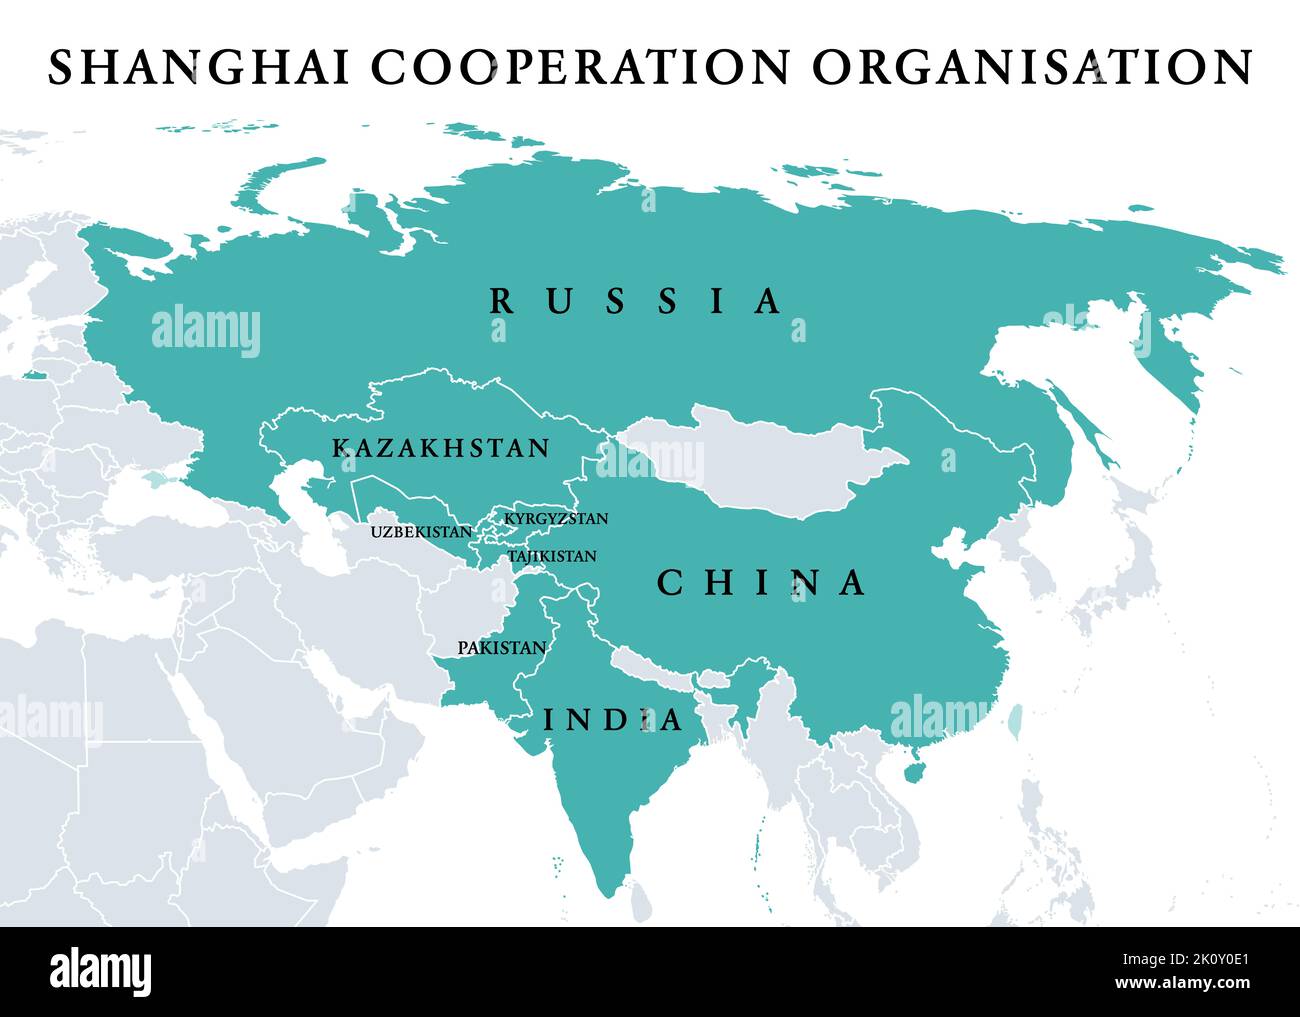 Organización de Cooperación de Shanghai, Estados miembros de la SCO, mapa político. Organización política, económica y de seguridad de Eurasia. Foto de stock